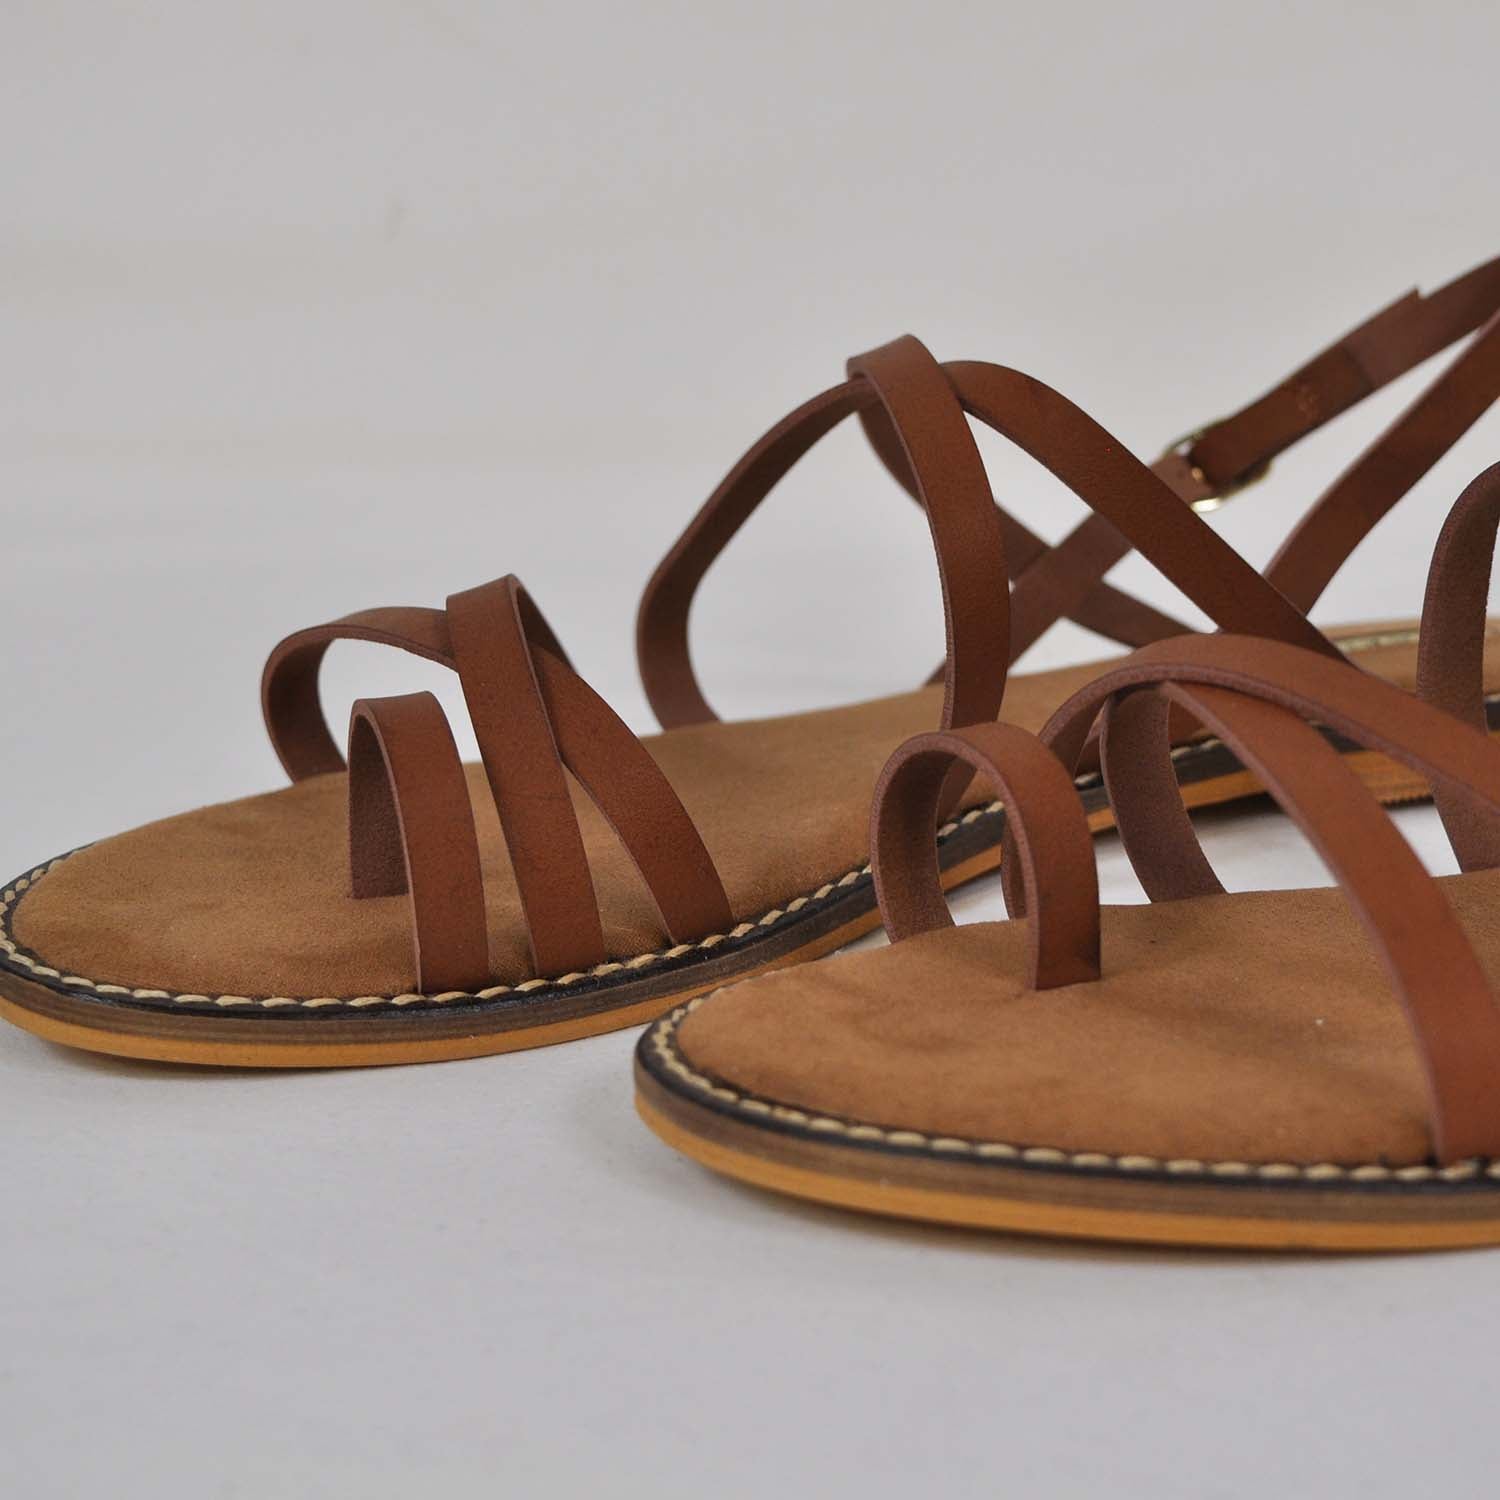 Brown straps sandal